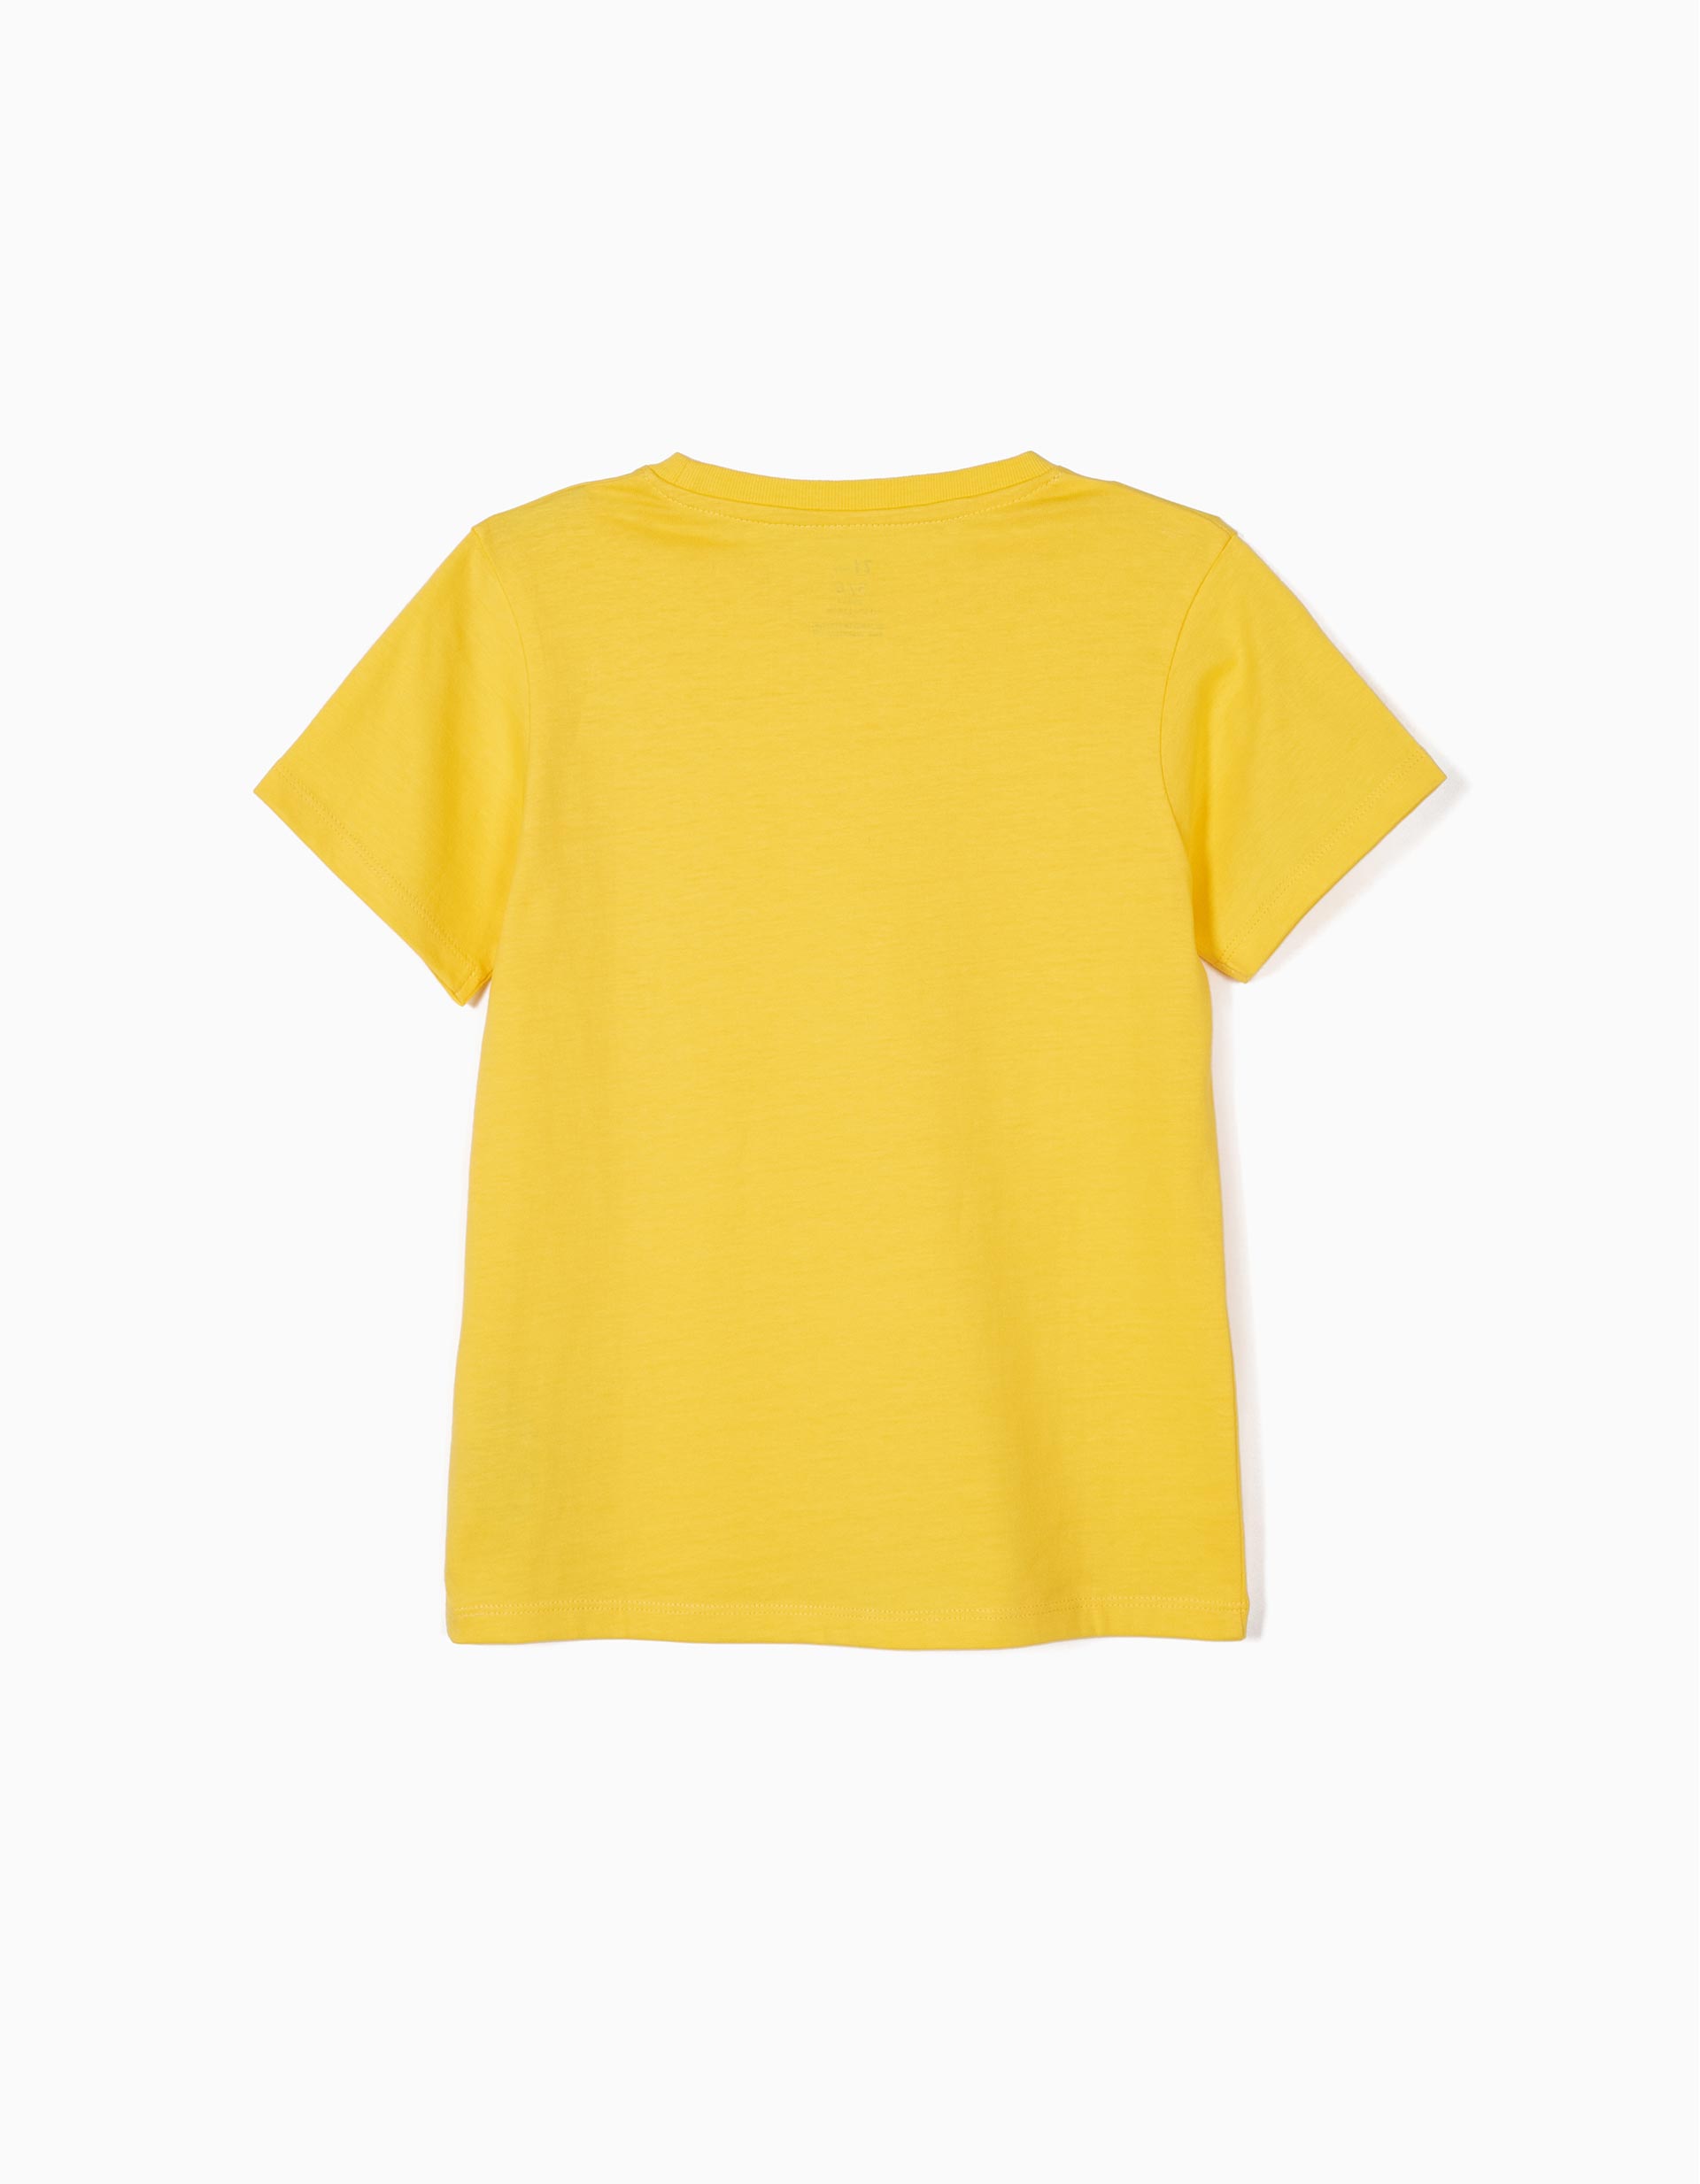 Camisetas Amarillas Basicas